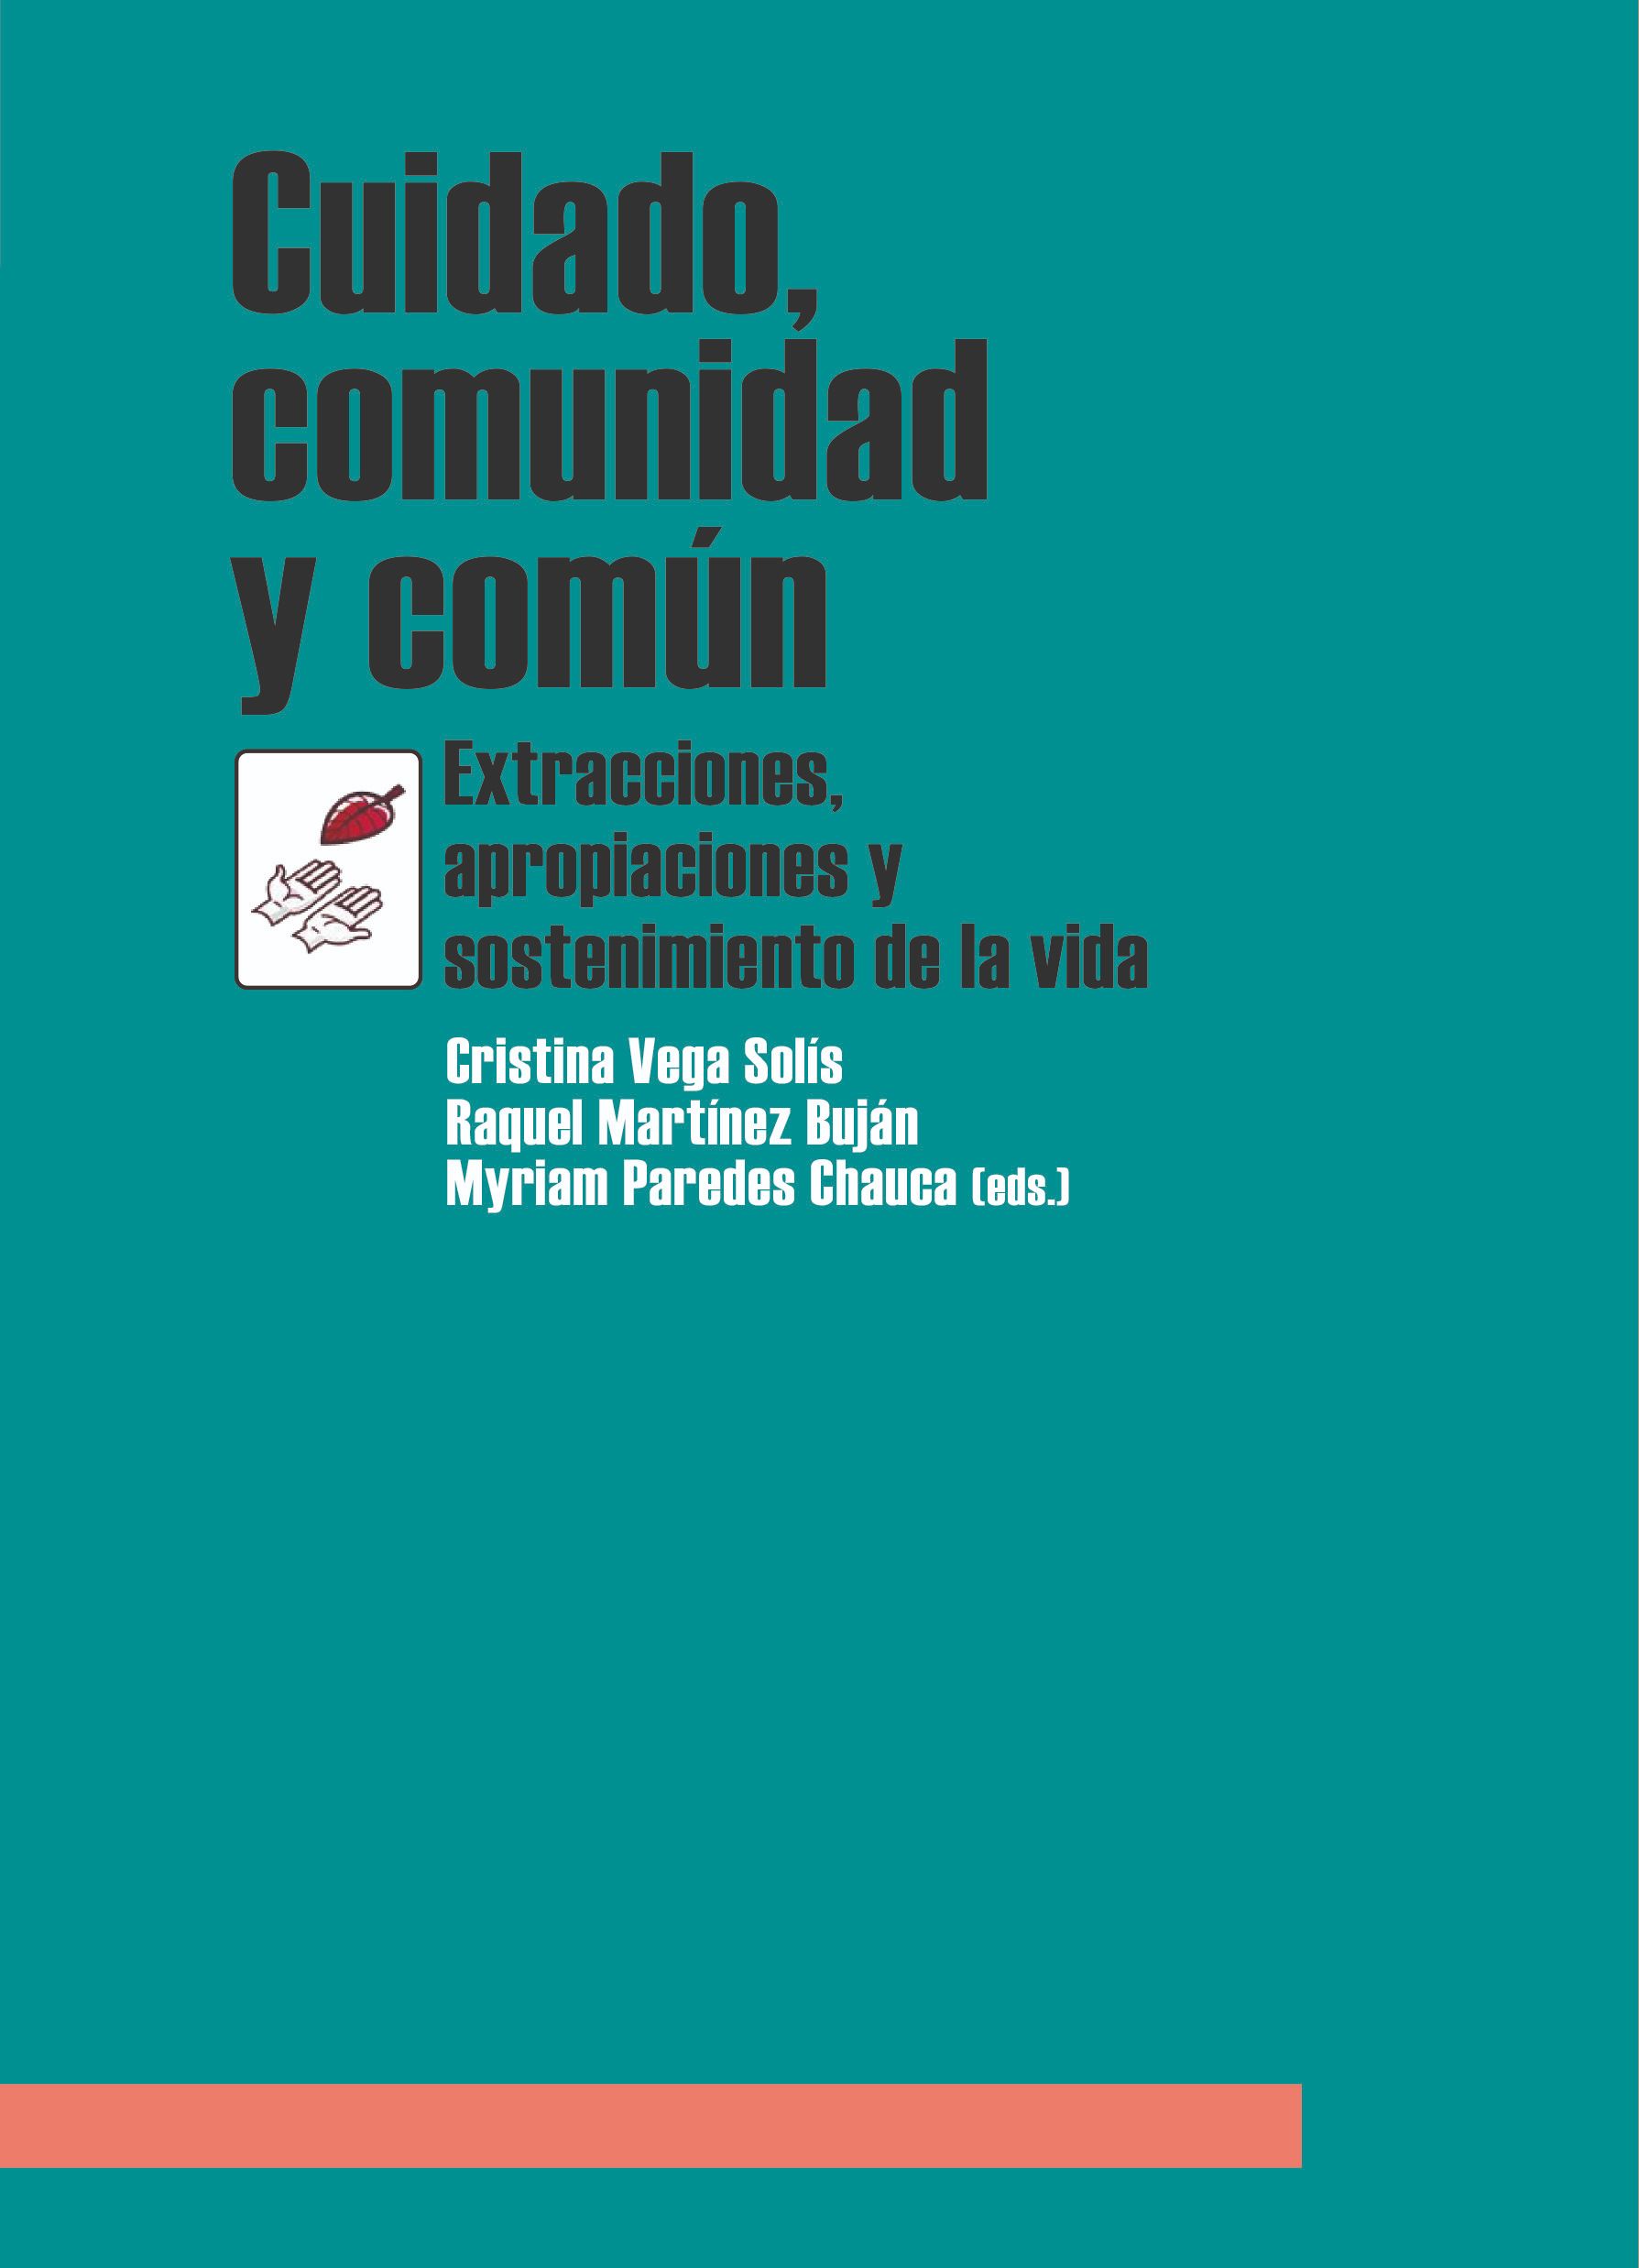 Llibre: Cuidado, comunidad y común. Extracciones, apropiaciones y sostenimiento de la vida. Traficantes de Sueños, 2018